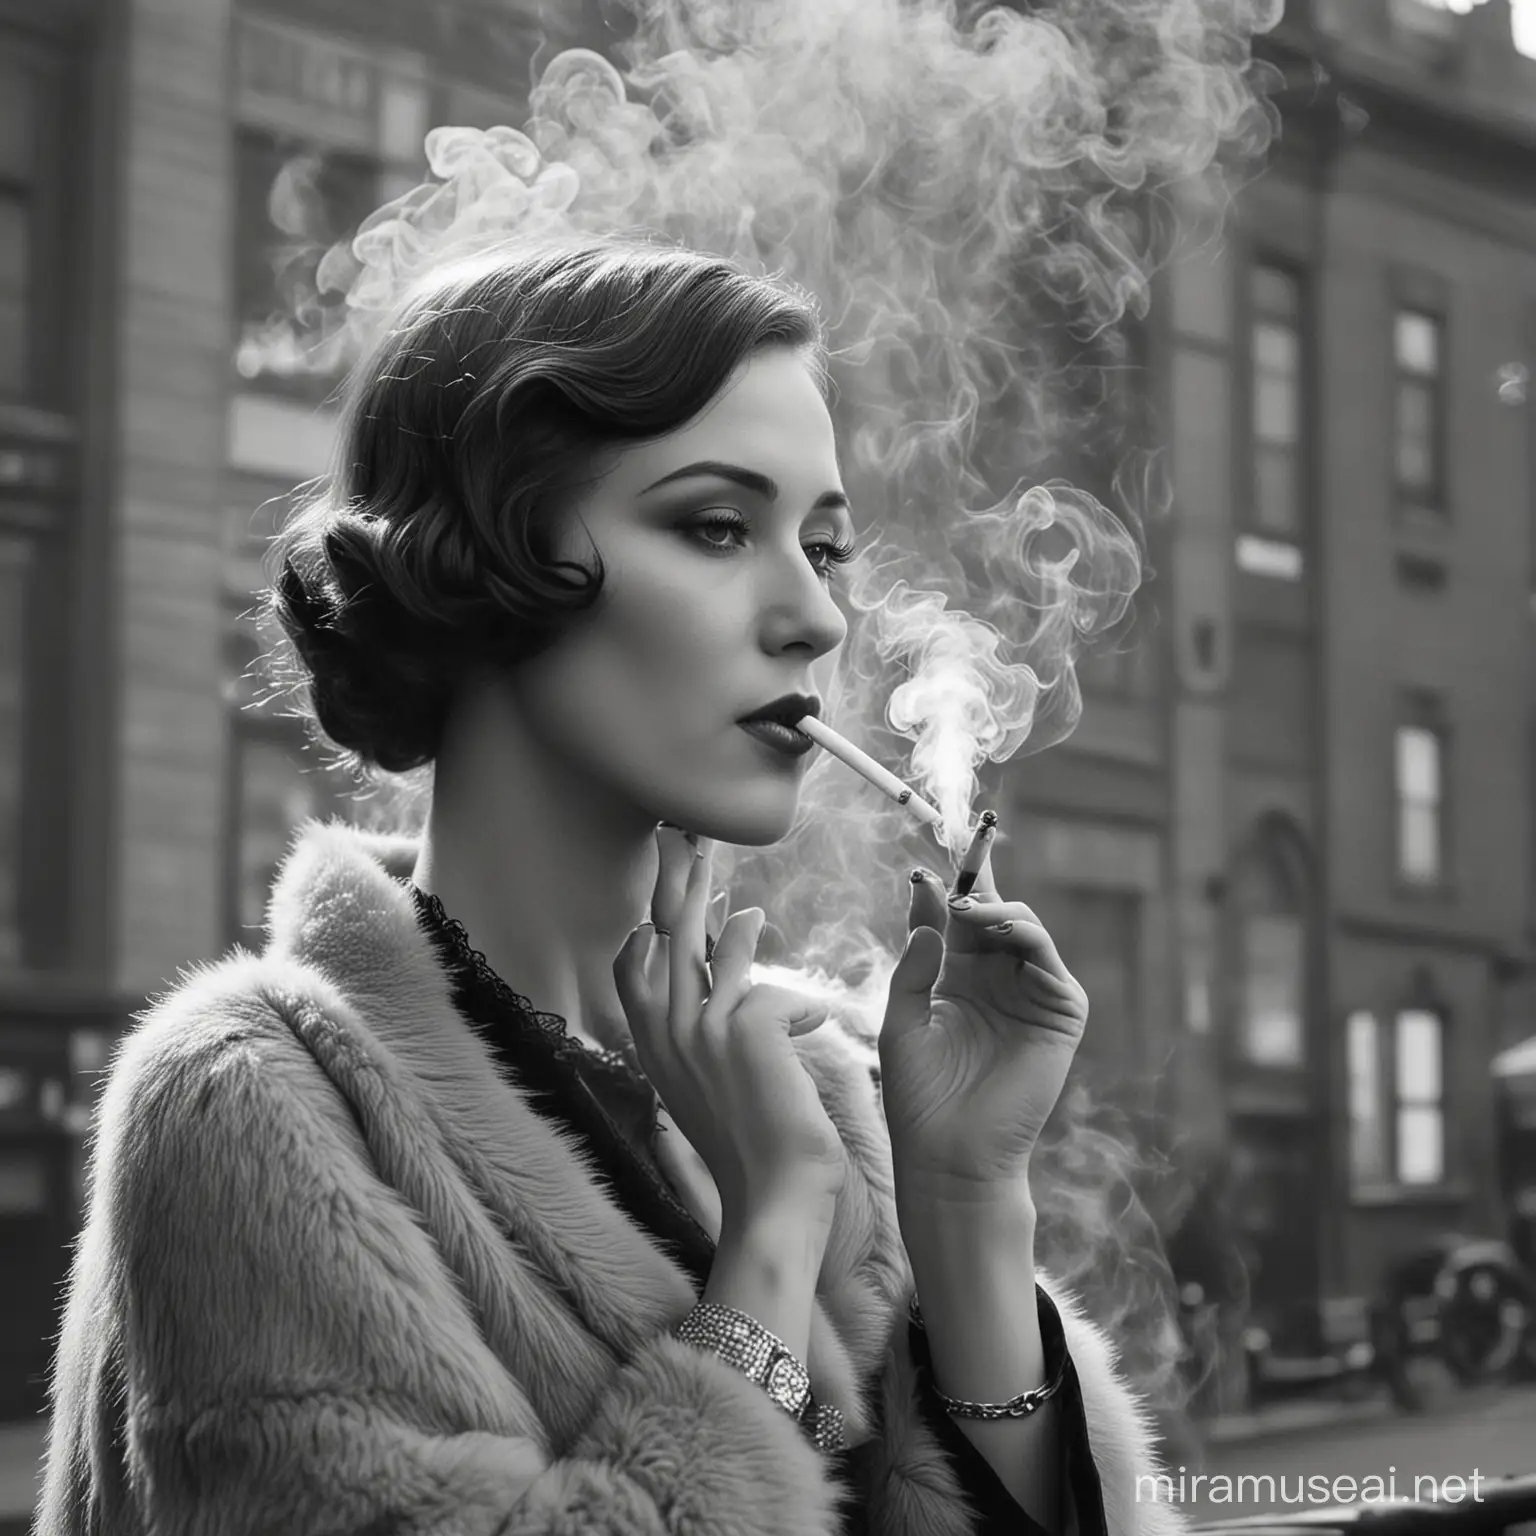 Roaring Twenties Urban Nightlife with Elegantly Dressed Smokers